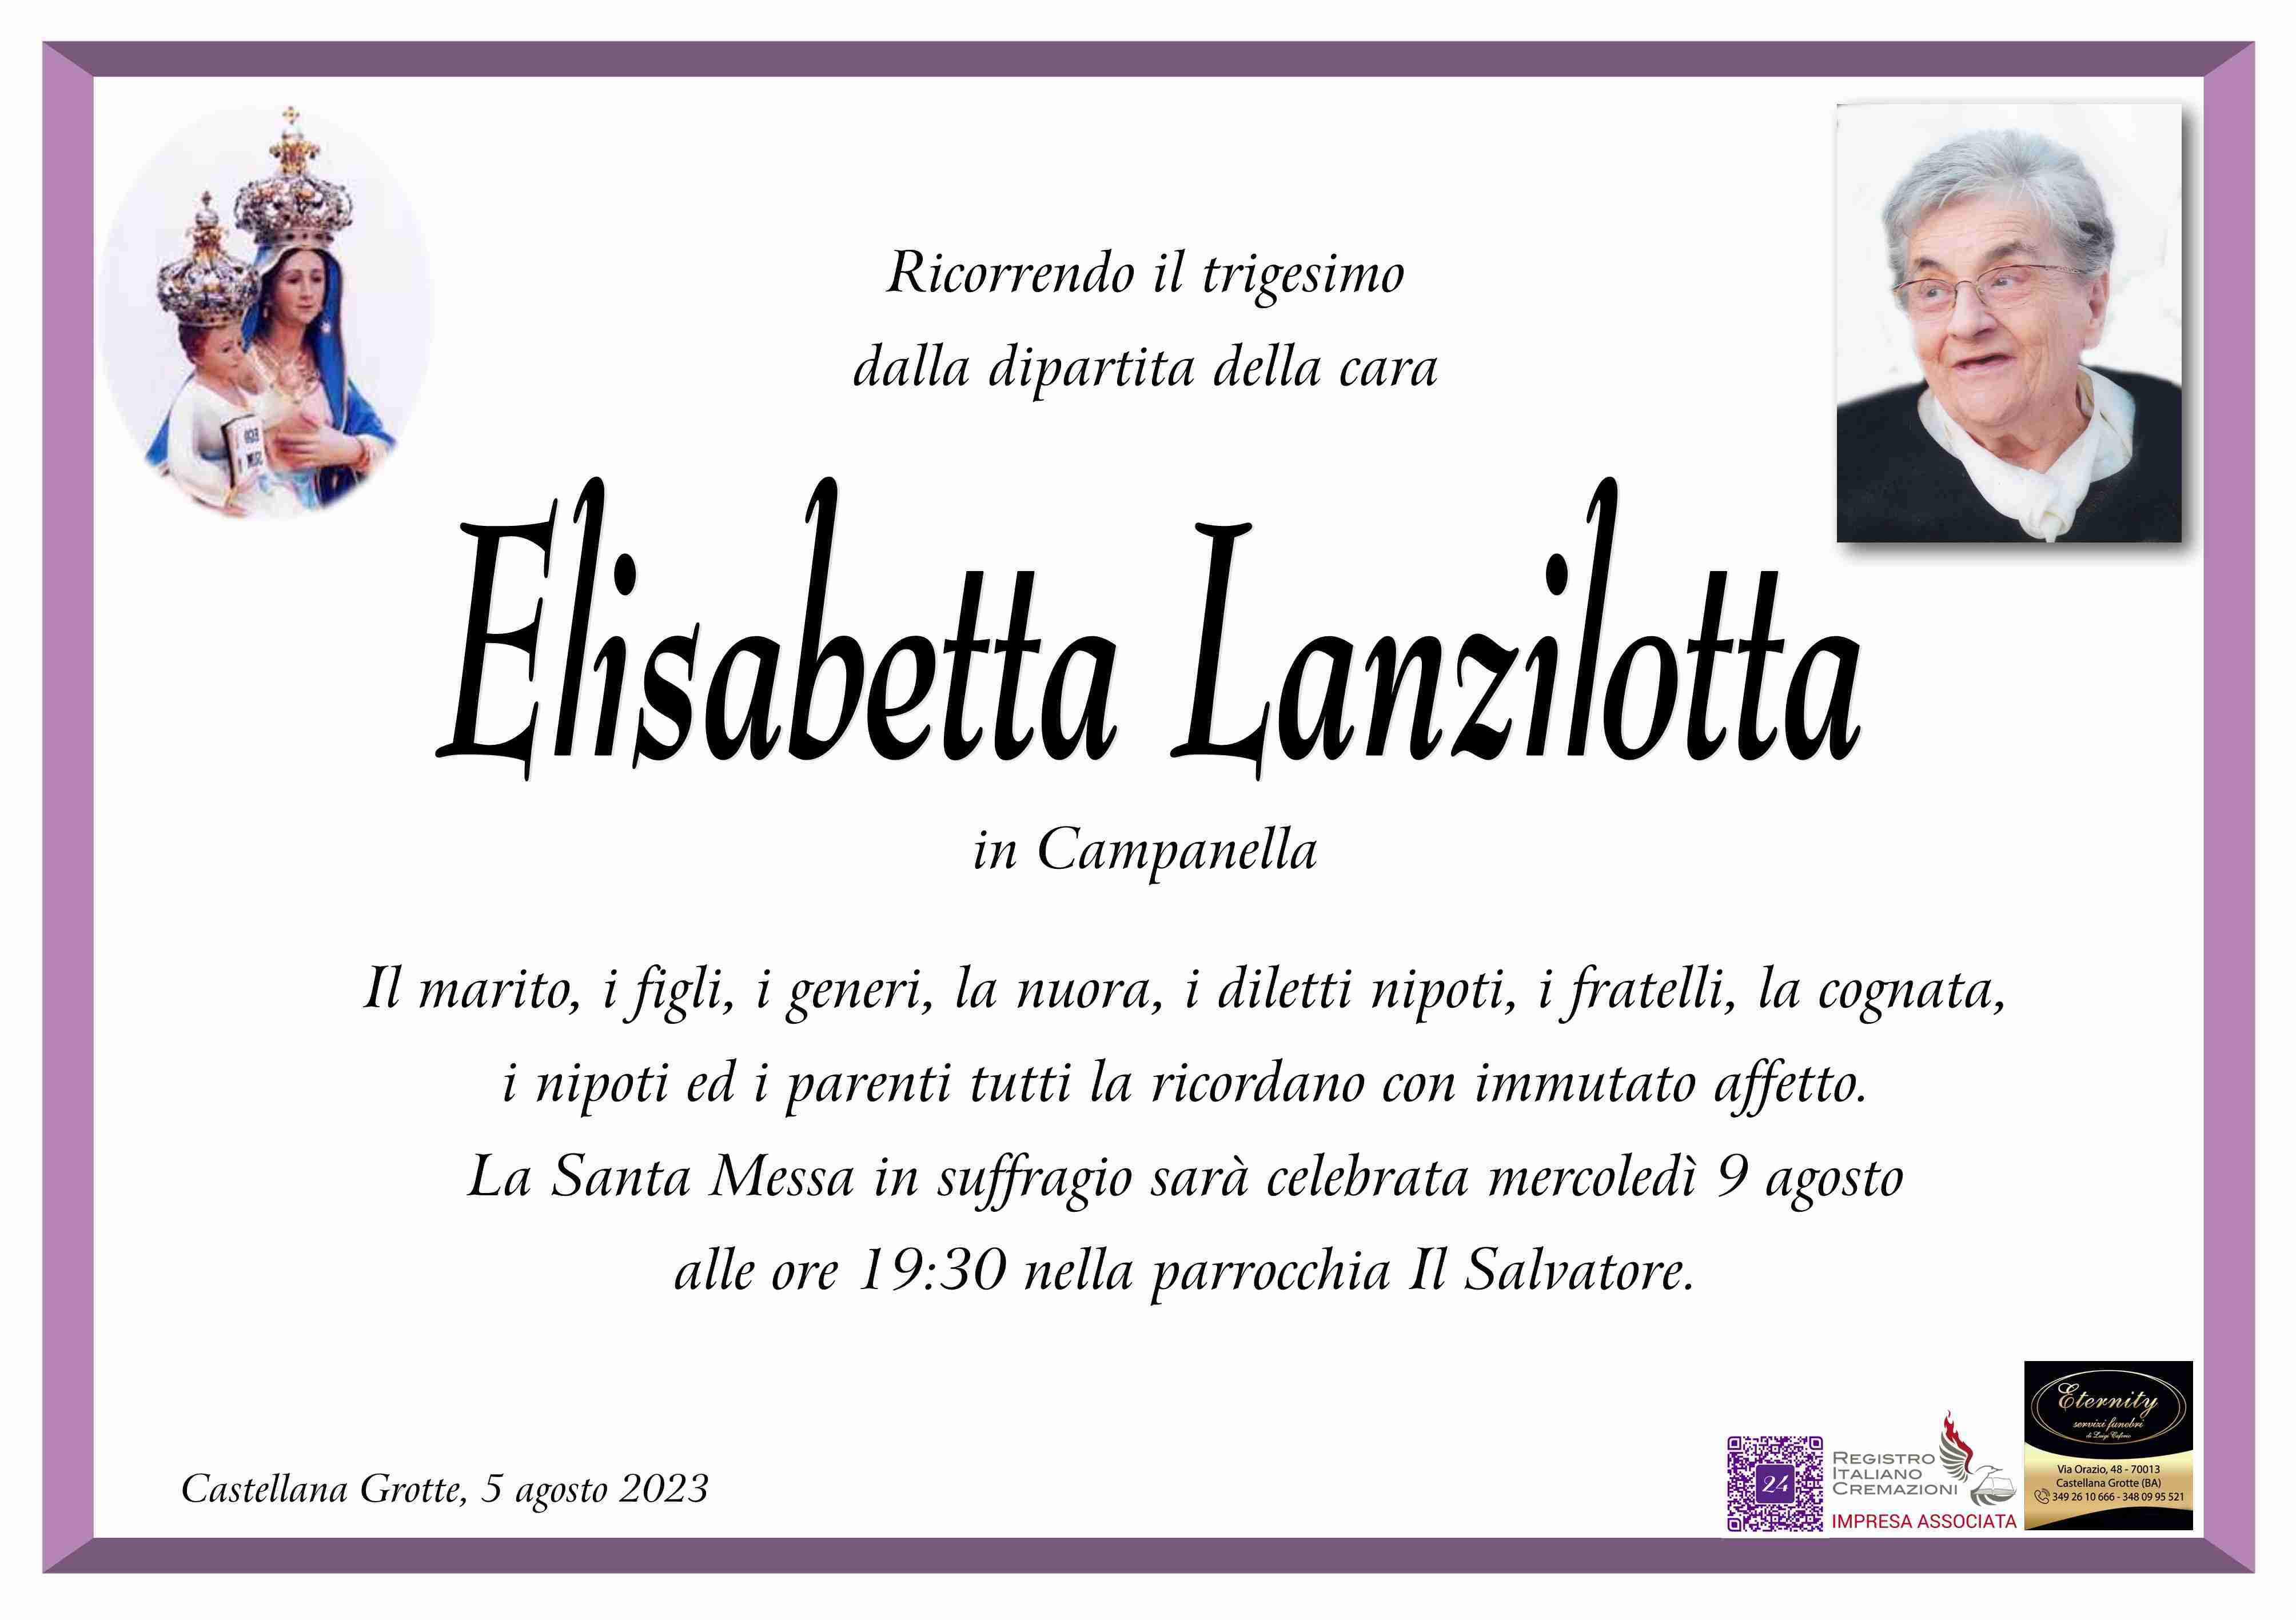 Elisabetta Lanzilotta